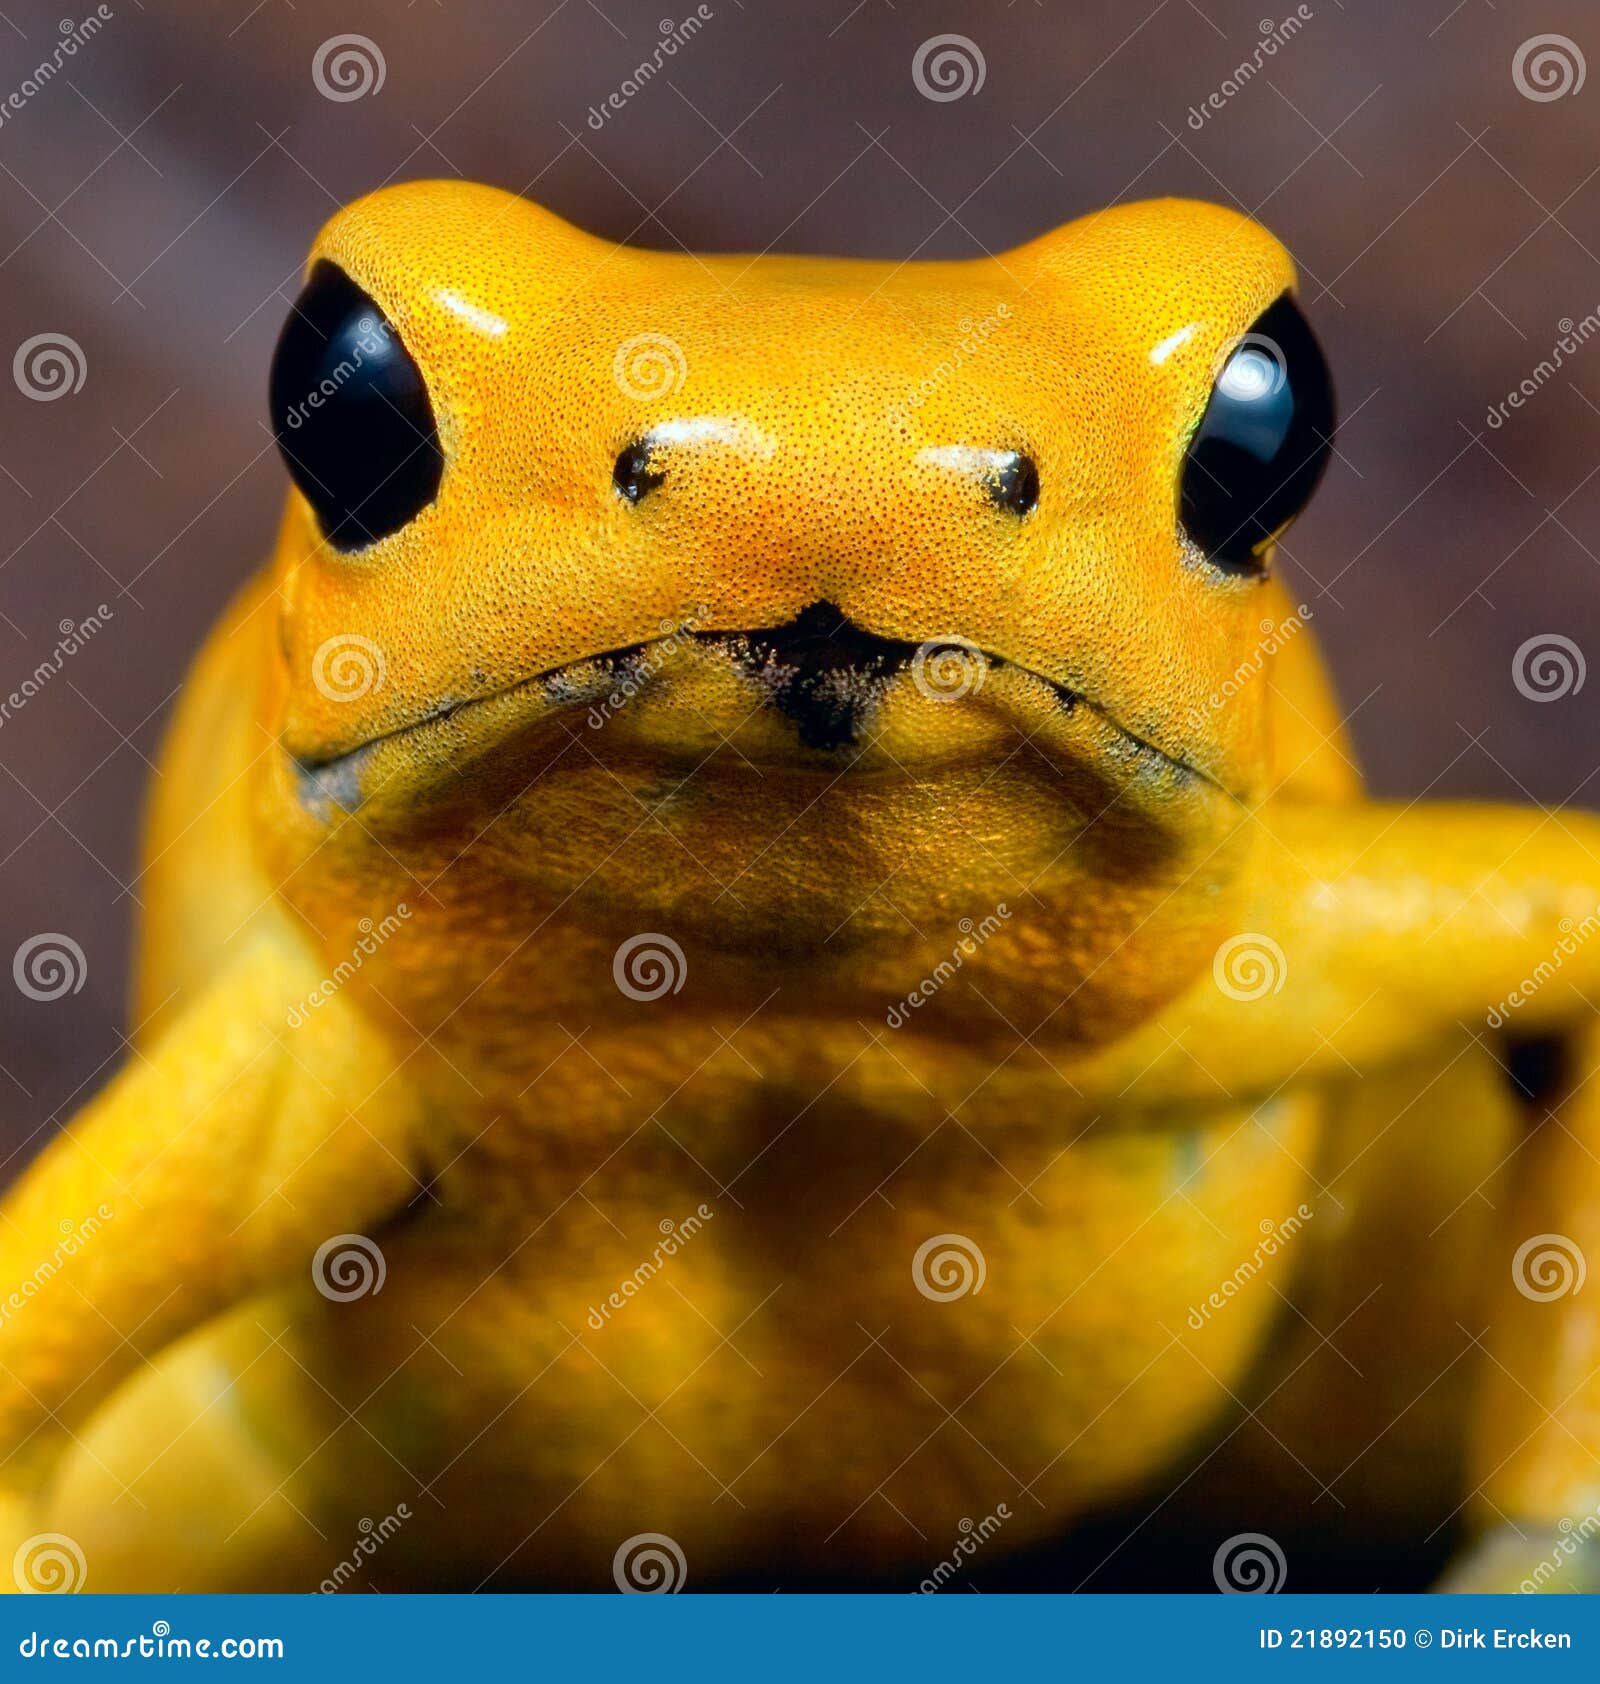 yellow poison dart frog poisonous animal